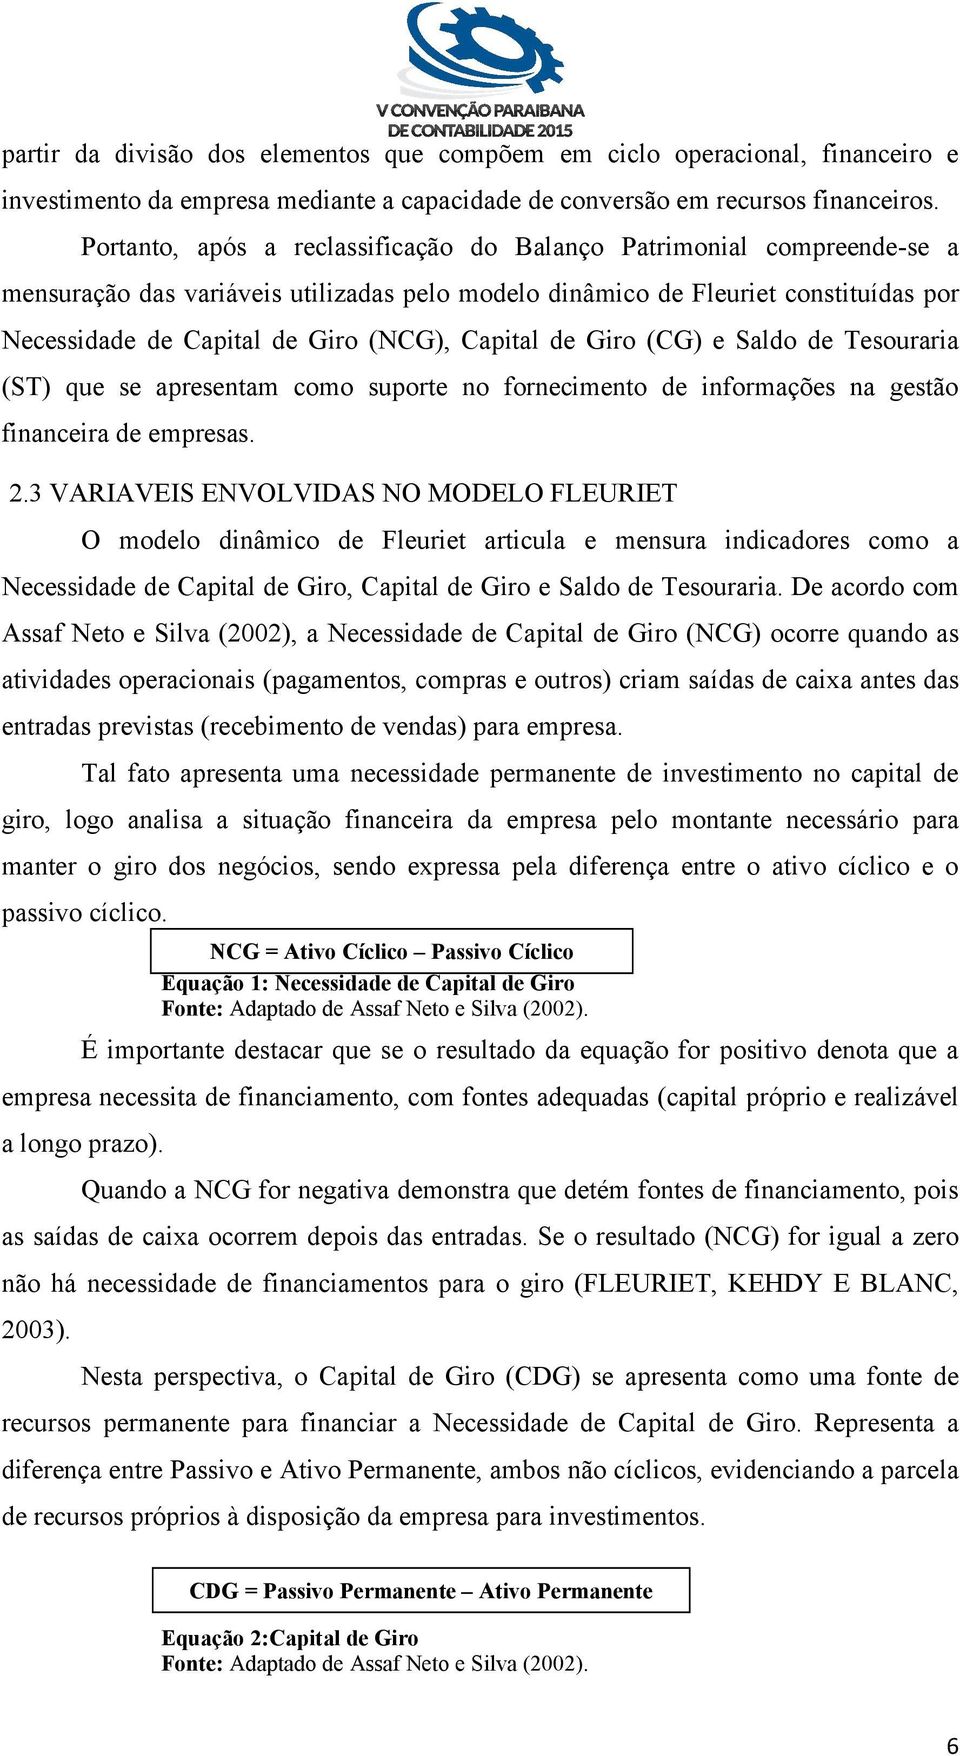 Capital de Giro (CG) e Saldo de Tesouraria (ST) que se apresentam como suporte no fornecimento de informações na gestão financeira de empresas. 2.